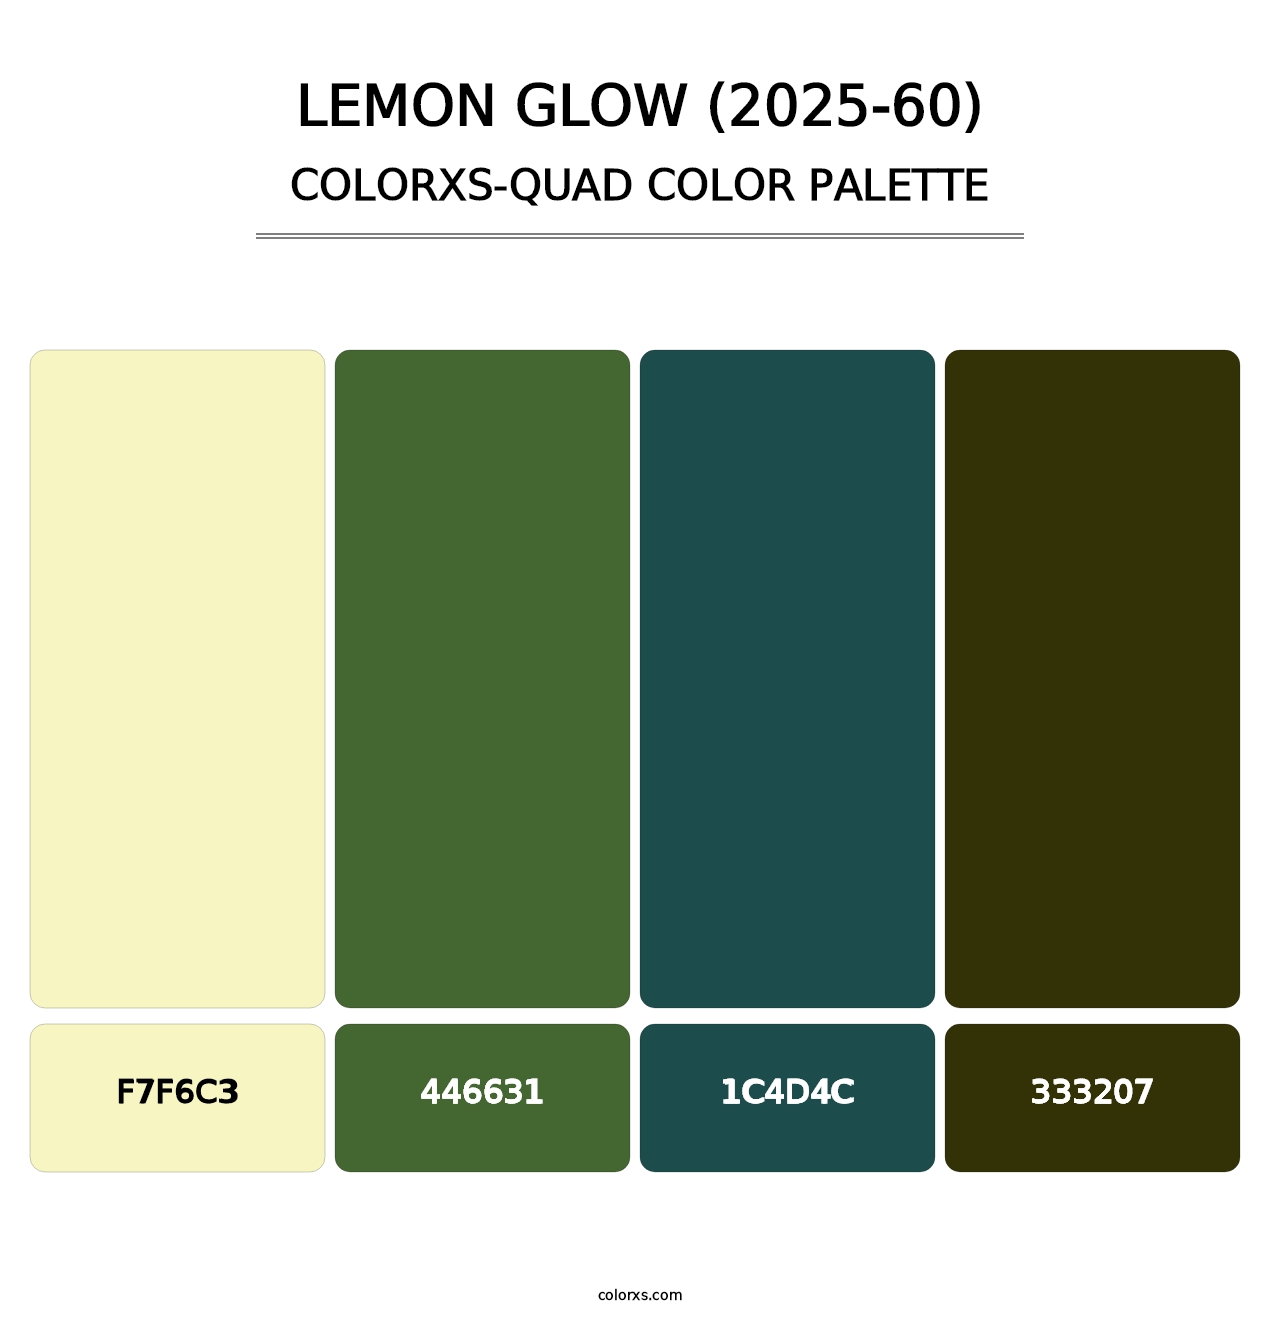 Lemon Glow (2025-60) - Colorxs Quad Palette